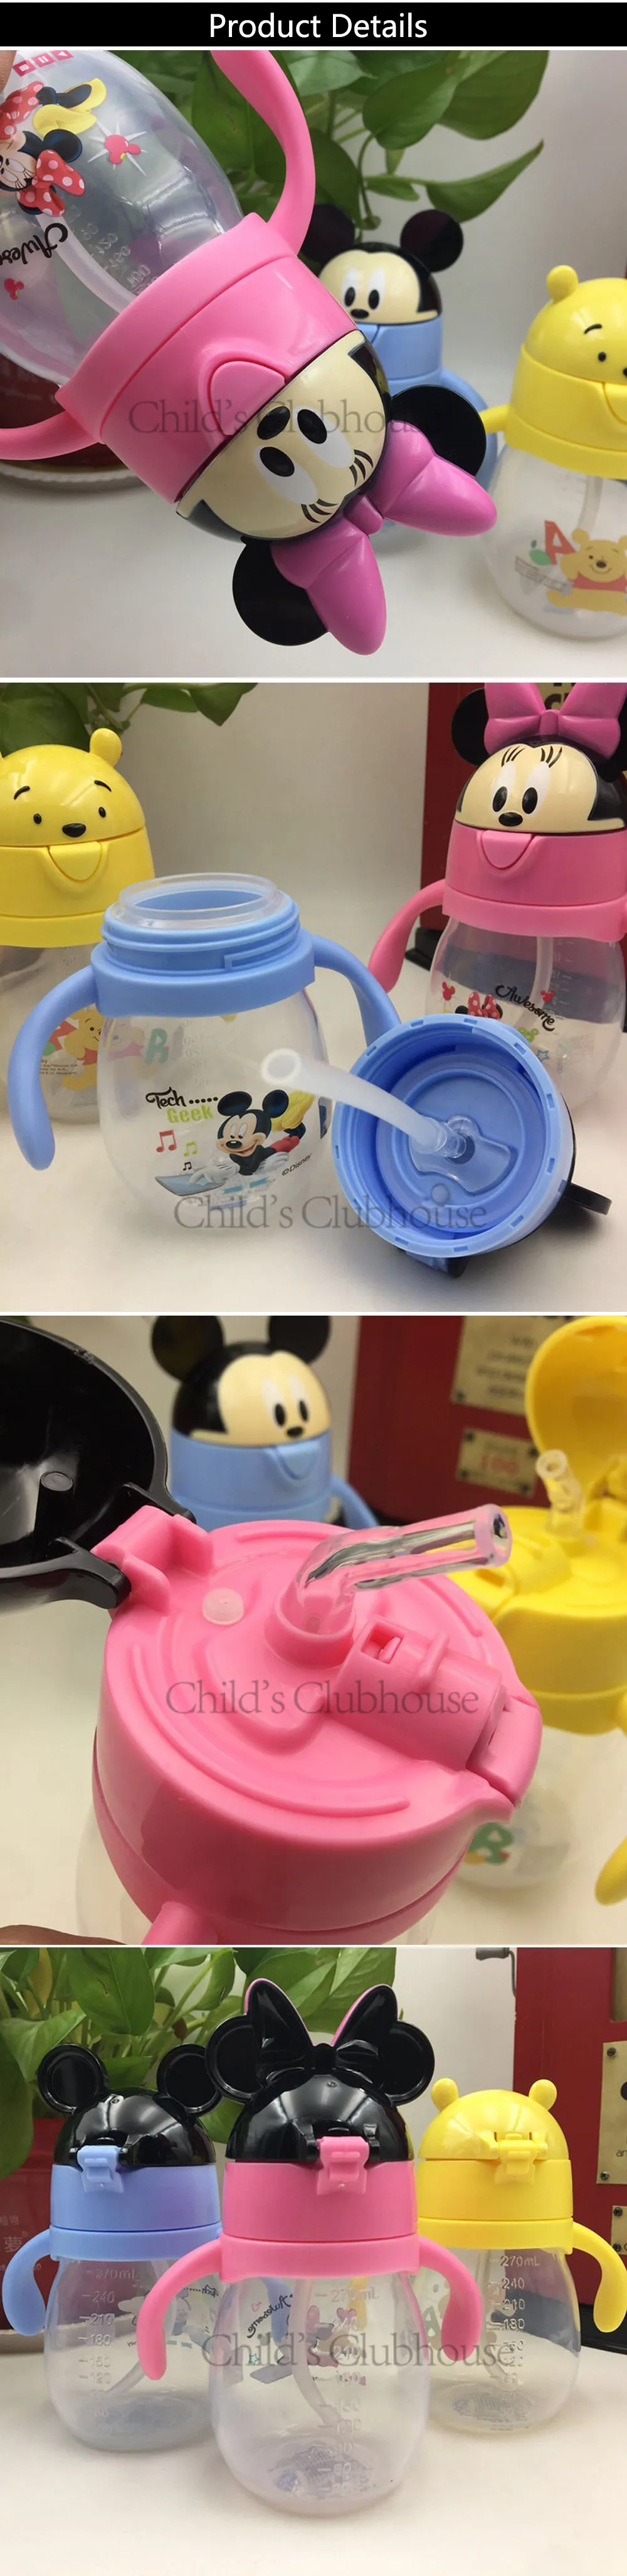 Disney 270 мл Микки Маус Детская кружка для кормления ребенок Детская безопасность соломинка для коктейлей бутылка Микки Минни портативный чашки подарки на день рождения